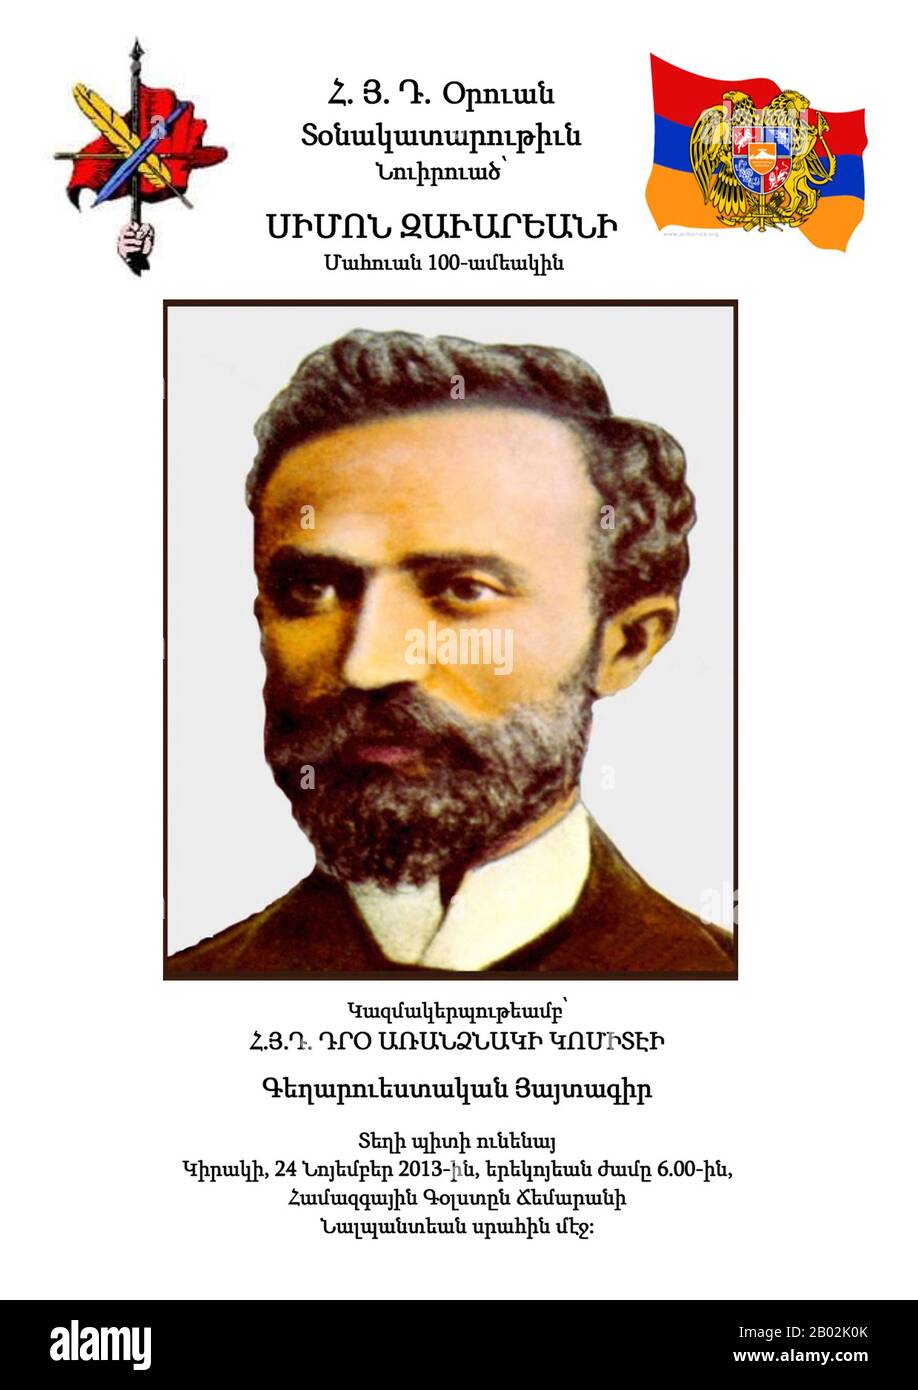 Simon Zavarian, (Armenisch:Սիմոն Զաւարեան) auch bekannt durch seinen nom de guerre Anton (Անտոն), (zwischen den Jahren von 63-1913) war einer der drei Gründer der Armenischen Revolutionären Föderation und Teil der nationalen Befreiungsbewegung Armeniens, entlang Kristapor Mikaelian und Stepan Zorian. Zavarian wurde in Aygehat, Lori geboren. Aufgewachsen besuchte er das College in Moskau, später ließ er sich in Tiflis nieder, wo er Kristapor Mikaelian und Stepan Zorian kennenlernte. Sie haben 1890 die Armenische Revolutionäre Föderation (ARF) mitgegründet. Diese politische Partei erhielt öffentliche Unterstützung, indem sie Reformen forderte und Waffen einnahm, um die Armenische ki zu verteidigen Stockfoto